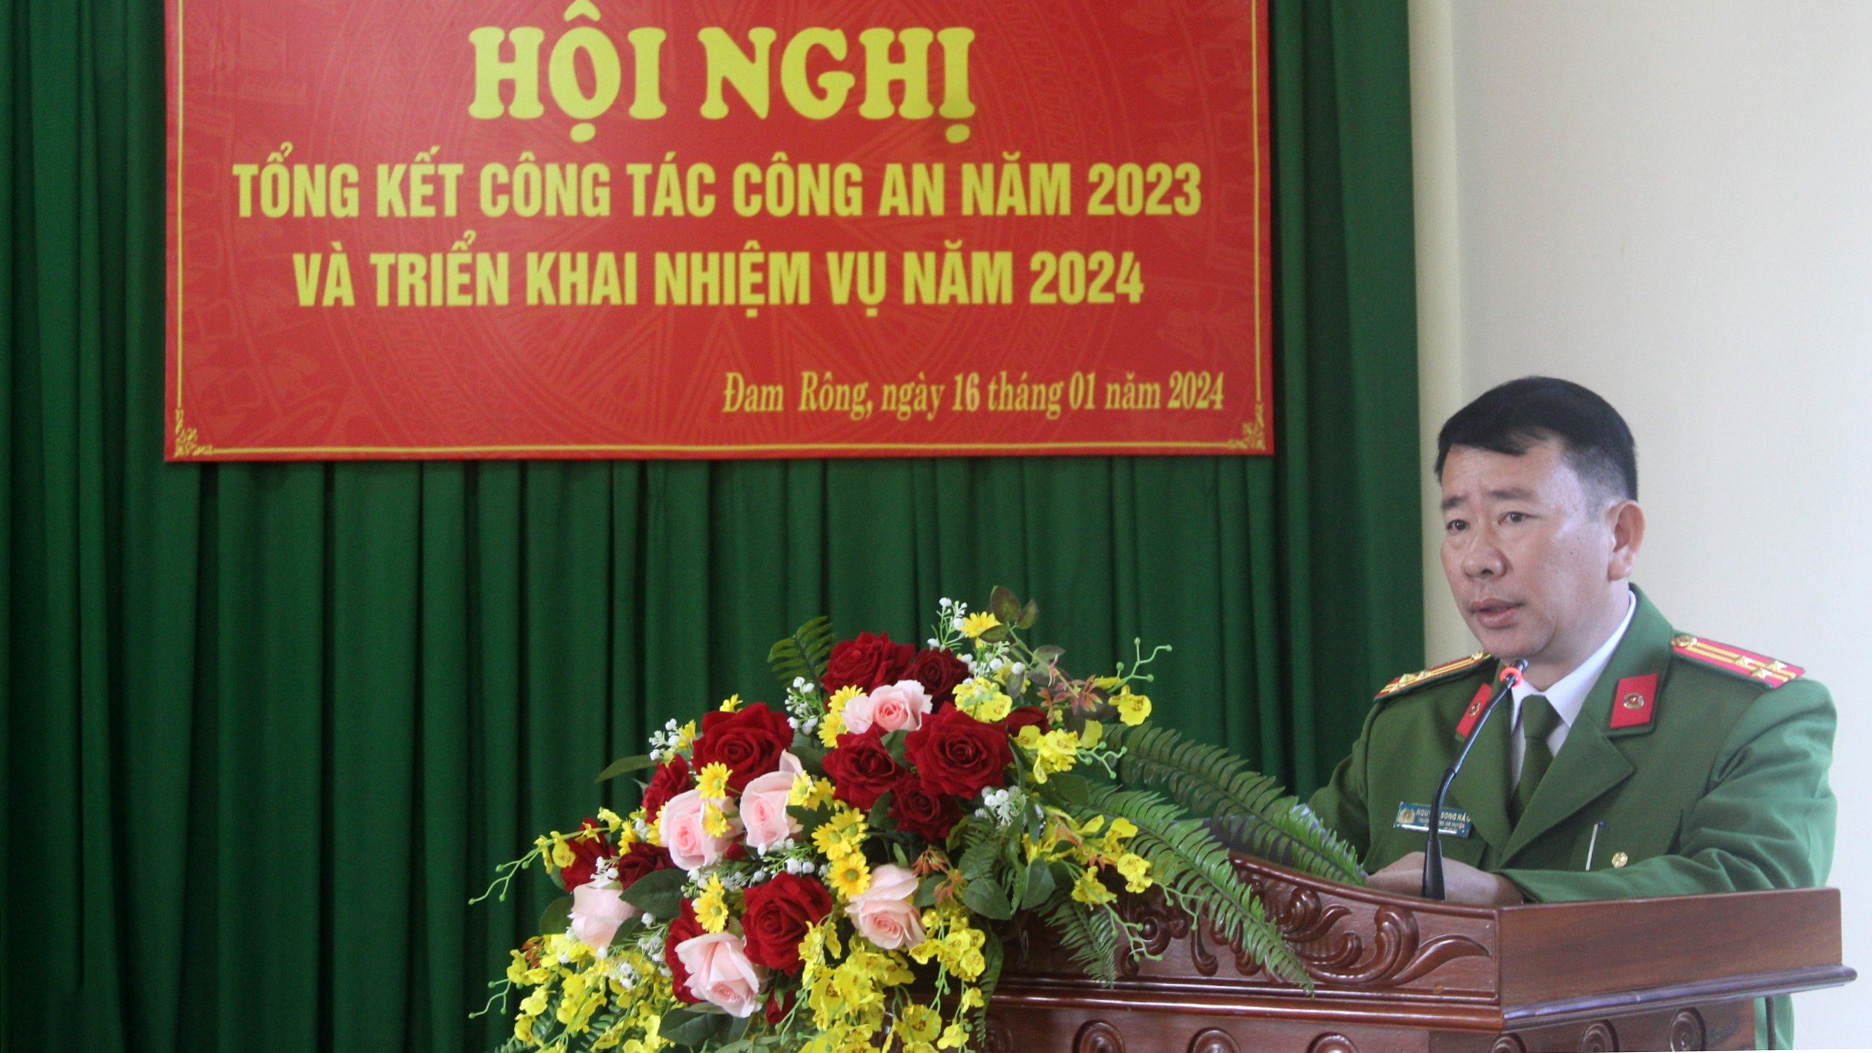 Thượng tá Nguyễn Song Hào - Trưởng Công an huyện Đam Rông phát biểu về nhiệm vụ năm 2024 của Công an huyện tại hội nghị